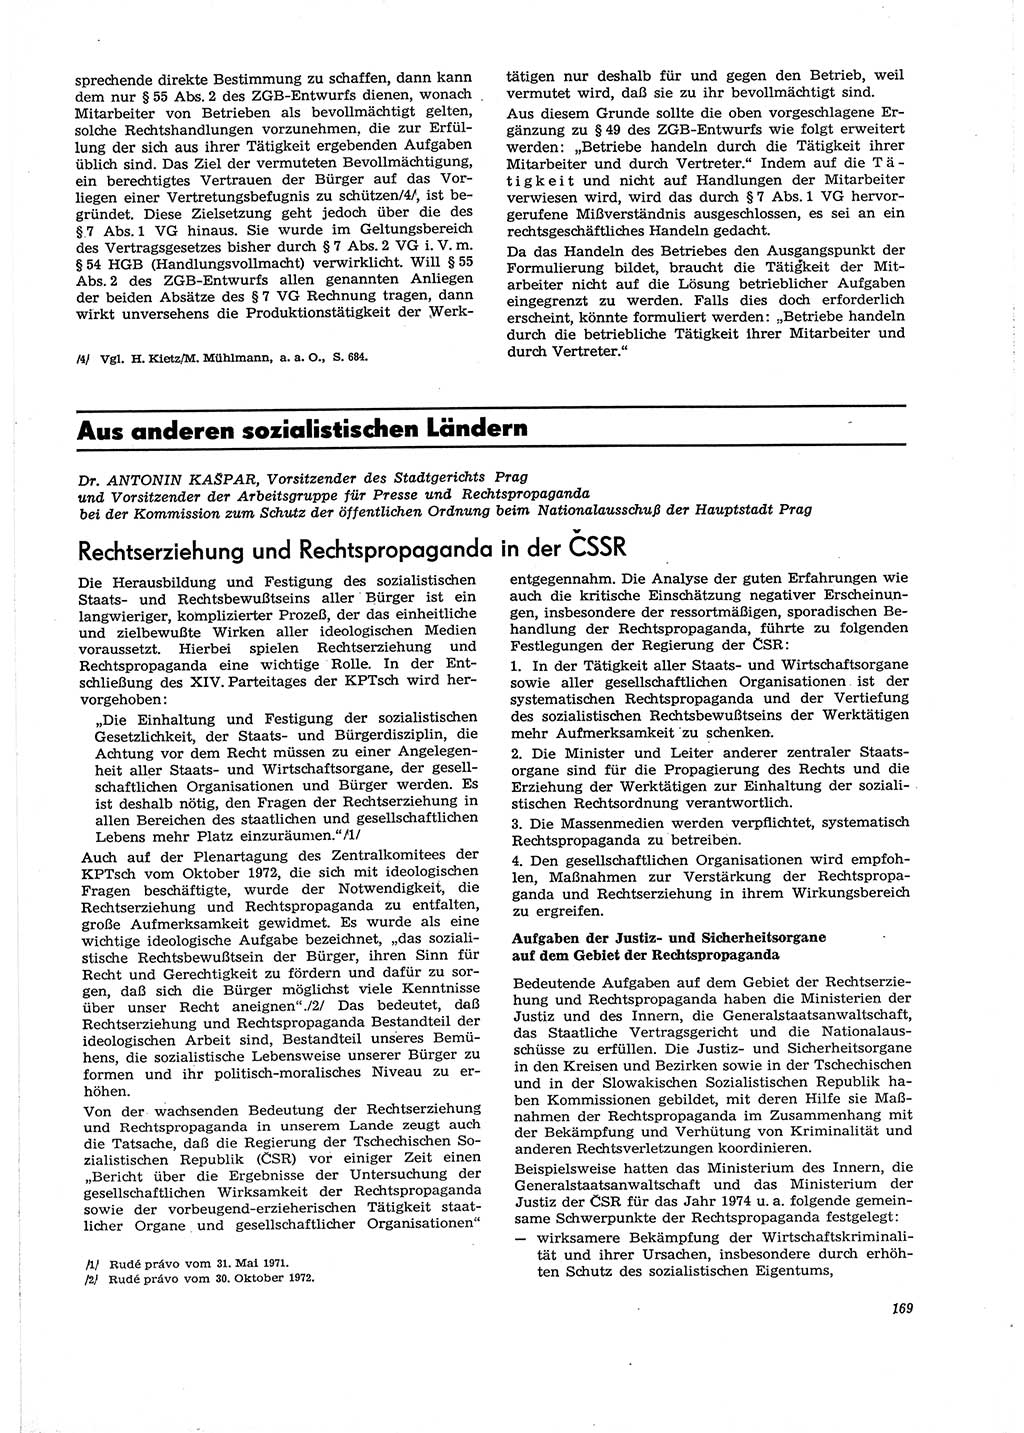 Neue Justiz (NJ), Zeitschrift für Recht und Rechtswissenschaft [Deutsche Demokratische Republik (DDR)], 29. Jahrgang 1975, Seite 169 (NJ DDR 1975, S. 169)